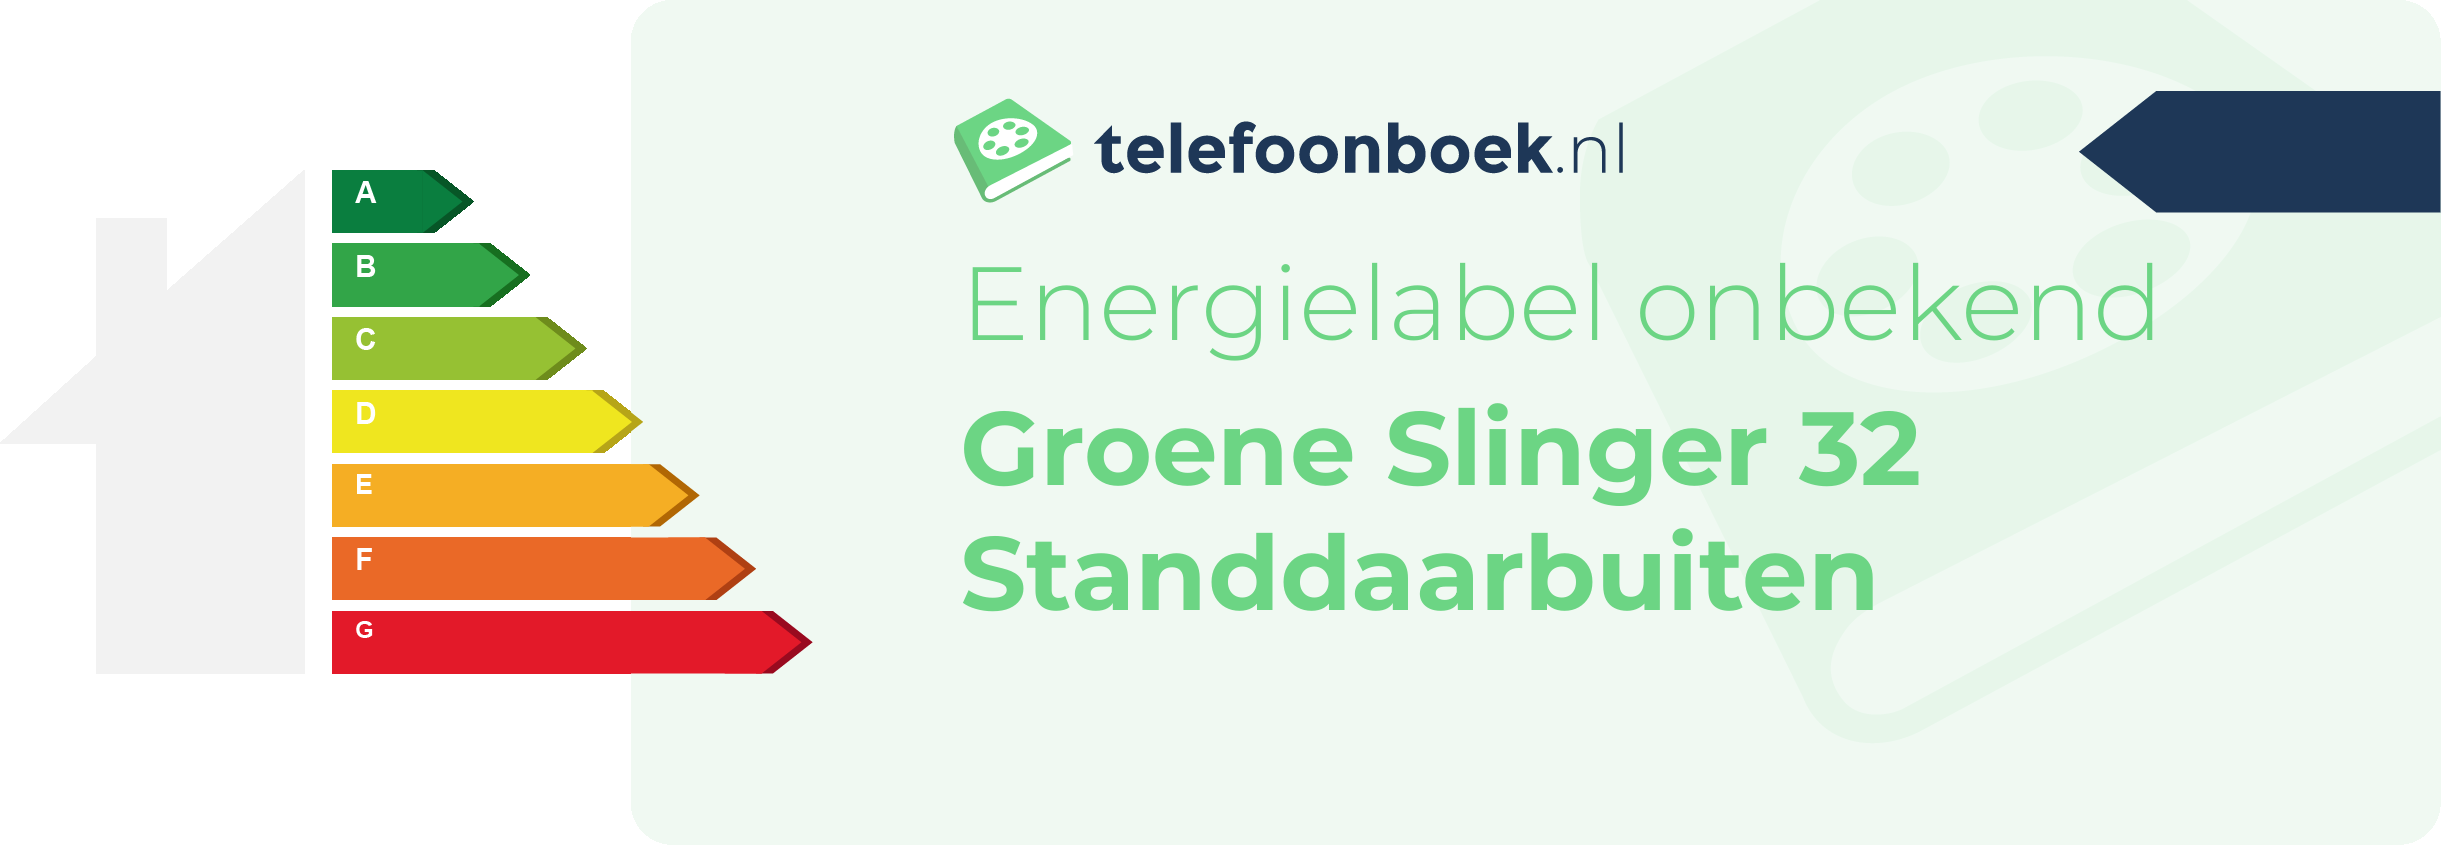 Energielabel Groene Slinger 32 Standdaarbuiten